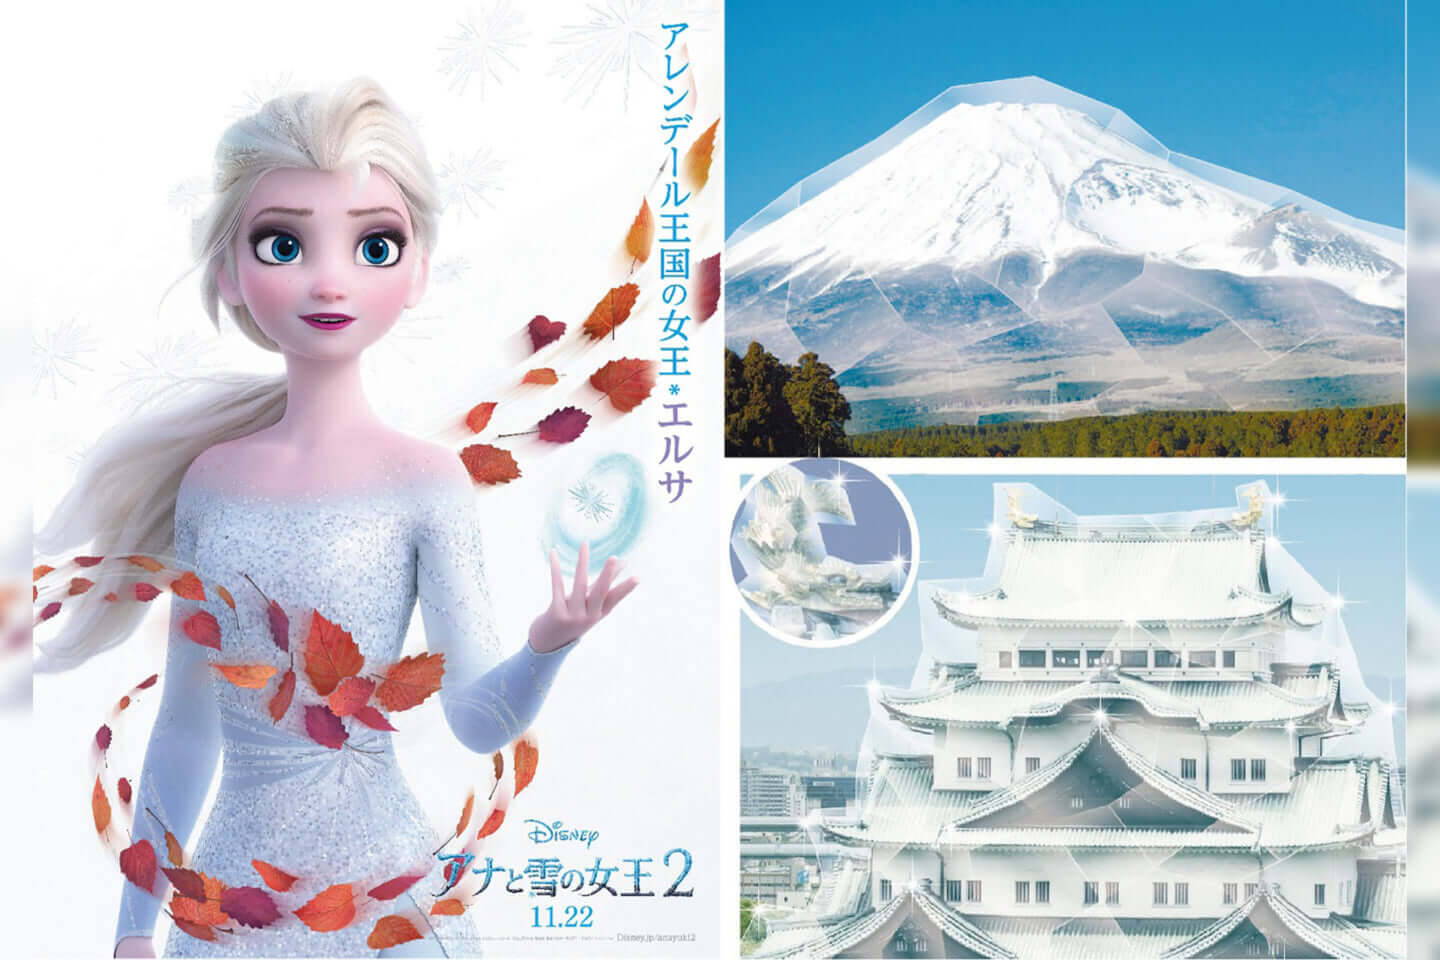 エルサの魔法で日本中が凍る アナと雪の女王2 公開直前 エルサが日本中を凍らせる スペシャル企画スタート 2019年11月15日 エキサイトニュース